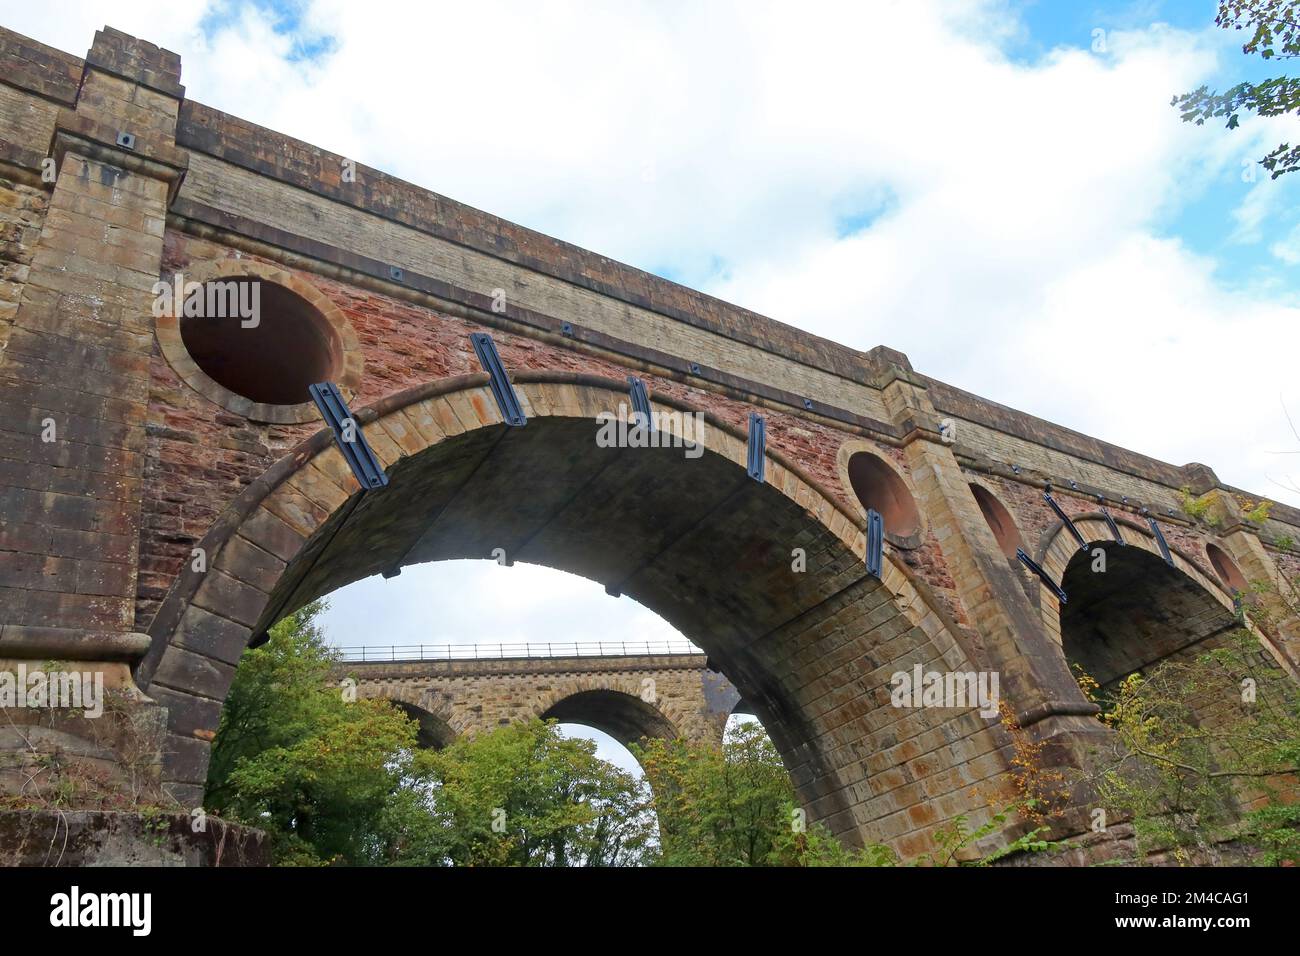 Marple grand canal aquaduct (Goyt Aquaduct), Marple, Stockport, Cheshire, England, UK, SK6 5LD Stock Photo